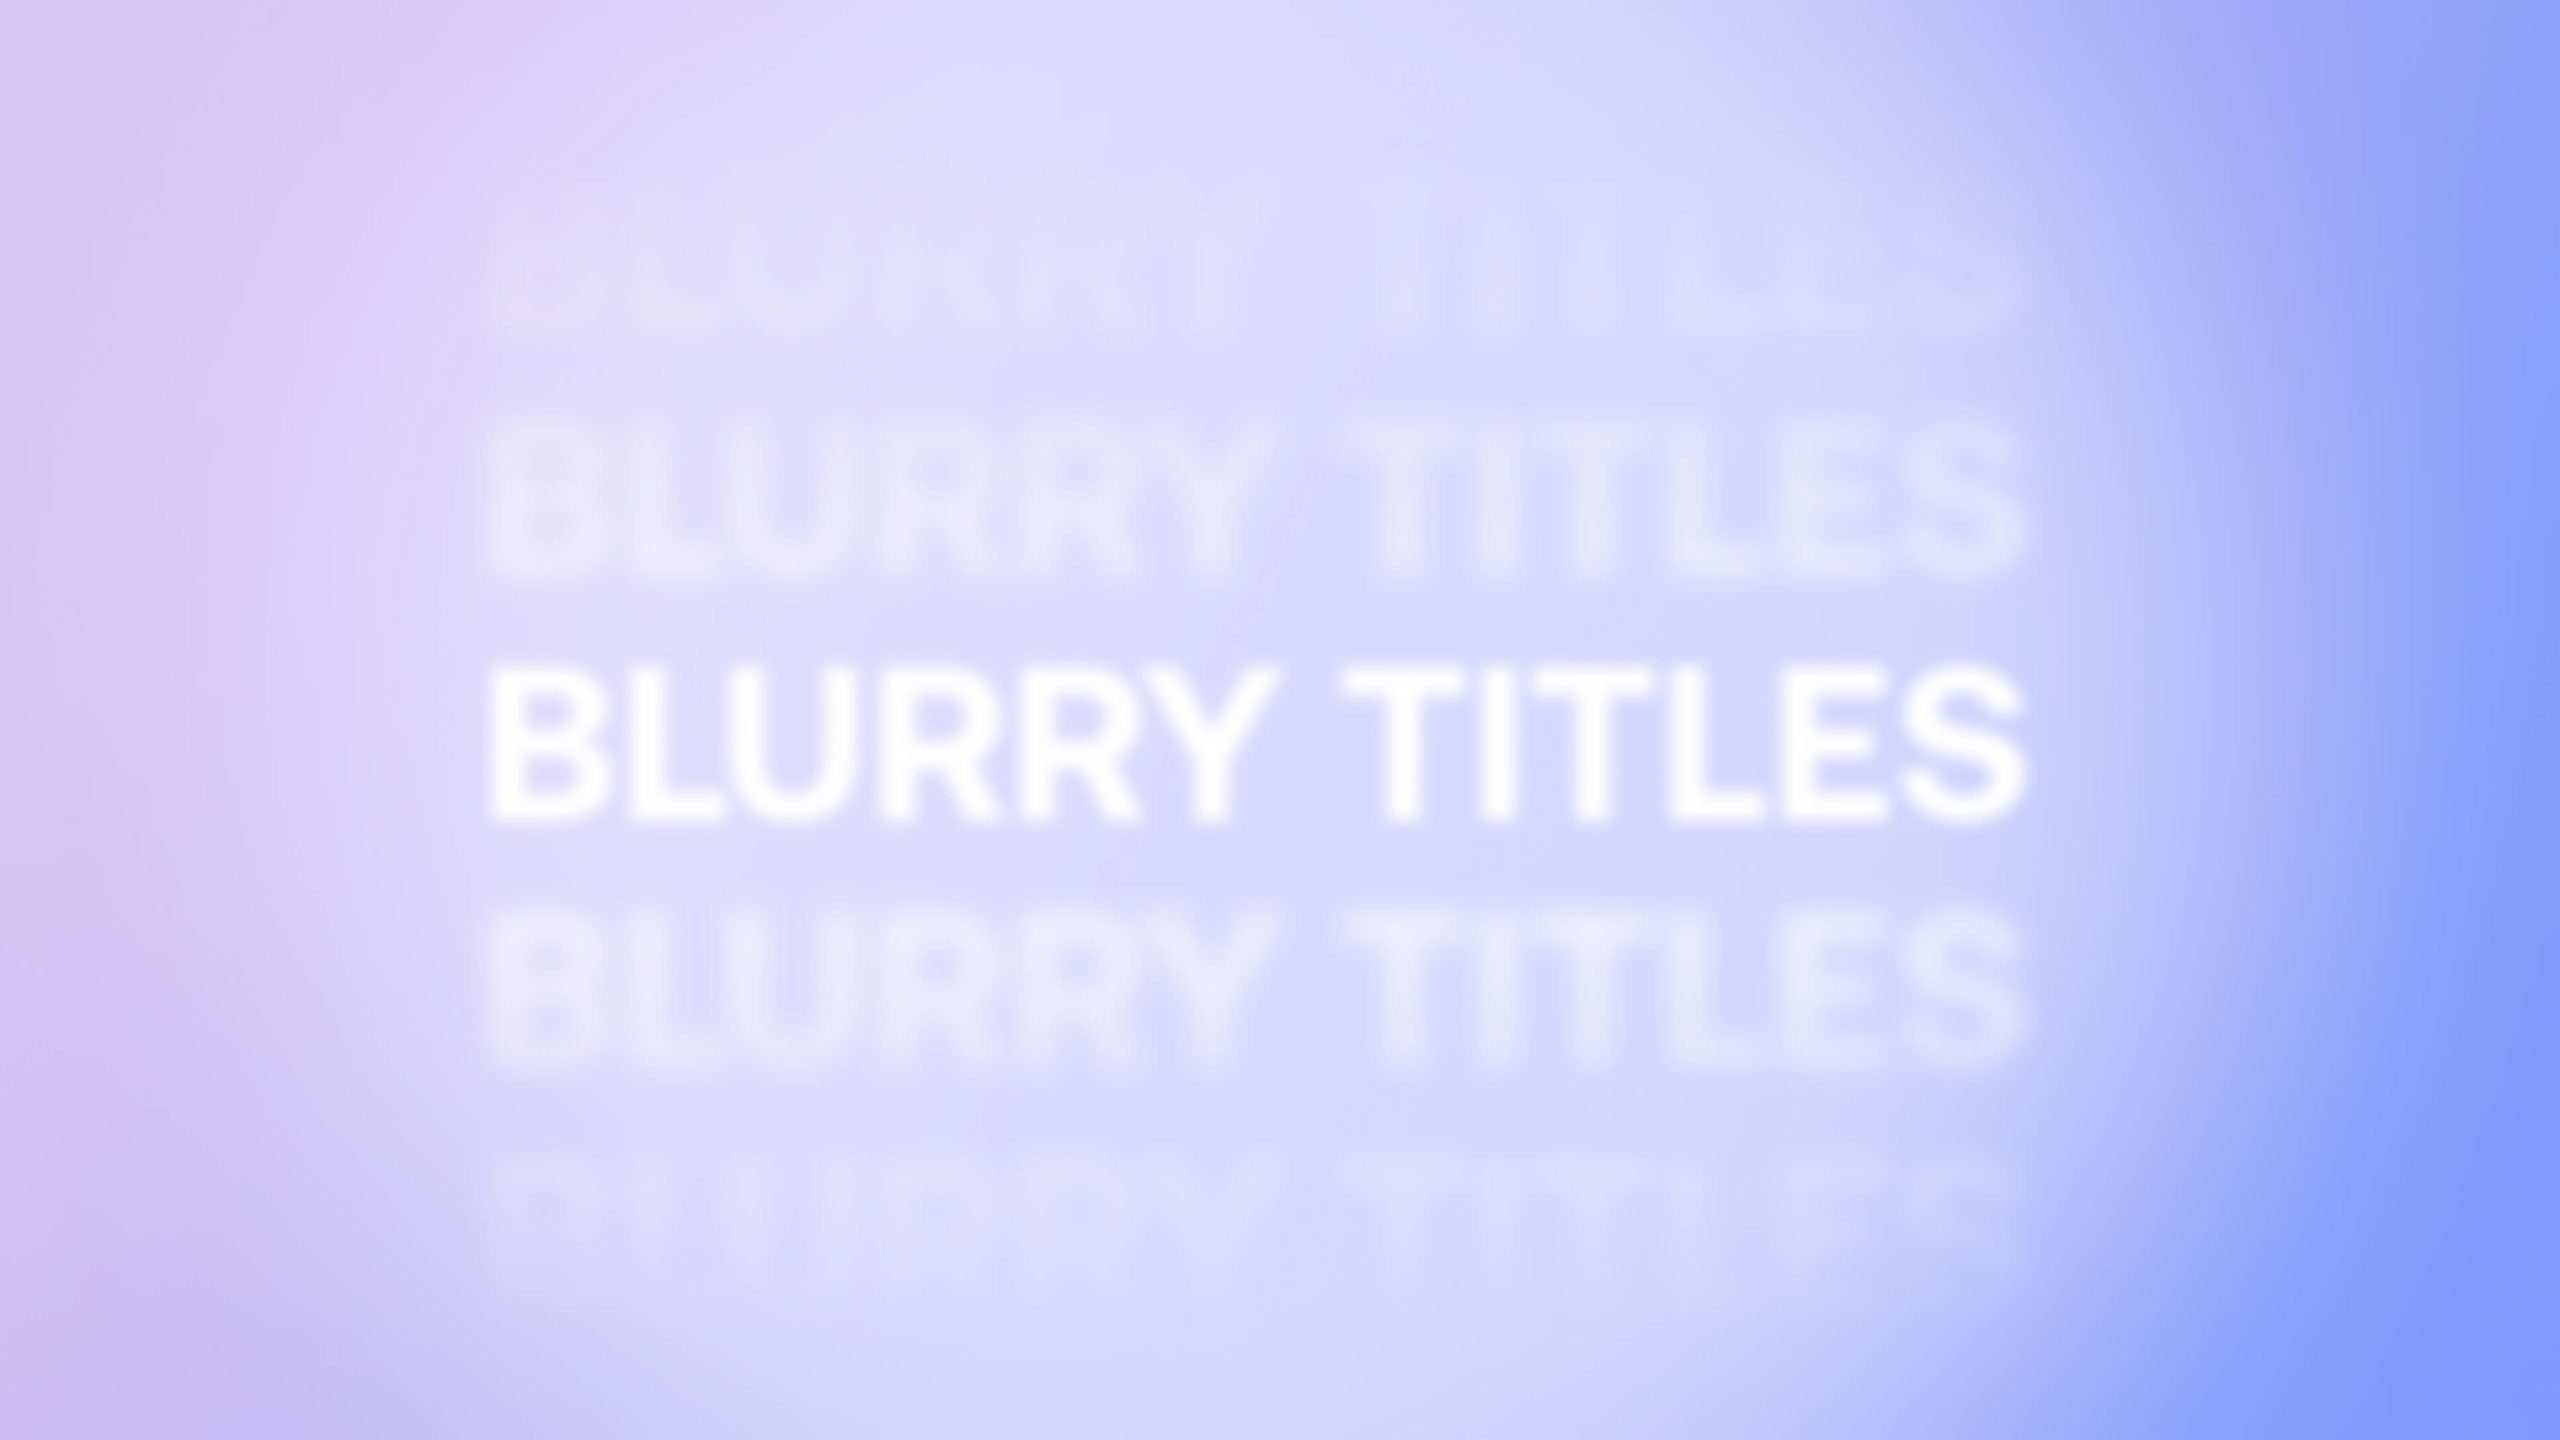 Blurry Titles - After Effects: Tận hưởng sức mạnh của các tiêu đề mờ đẹp mắt trong After Effects. Công cụ Blurry Titles sẽ giúp bạn tạo ra những tiêu đề phim độc đáo và cuốn hút người xem. 